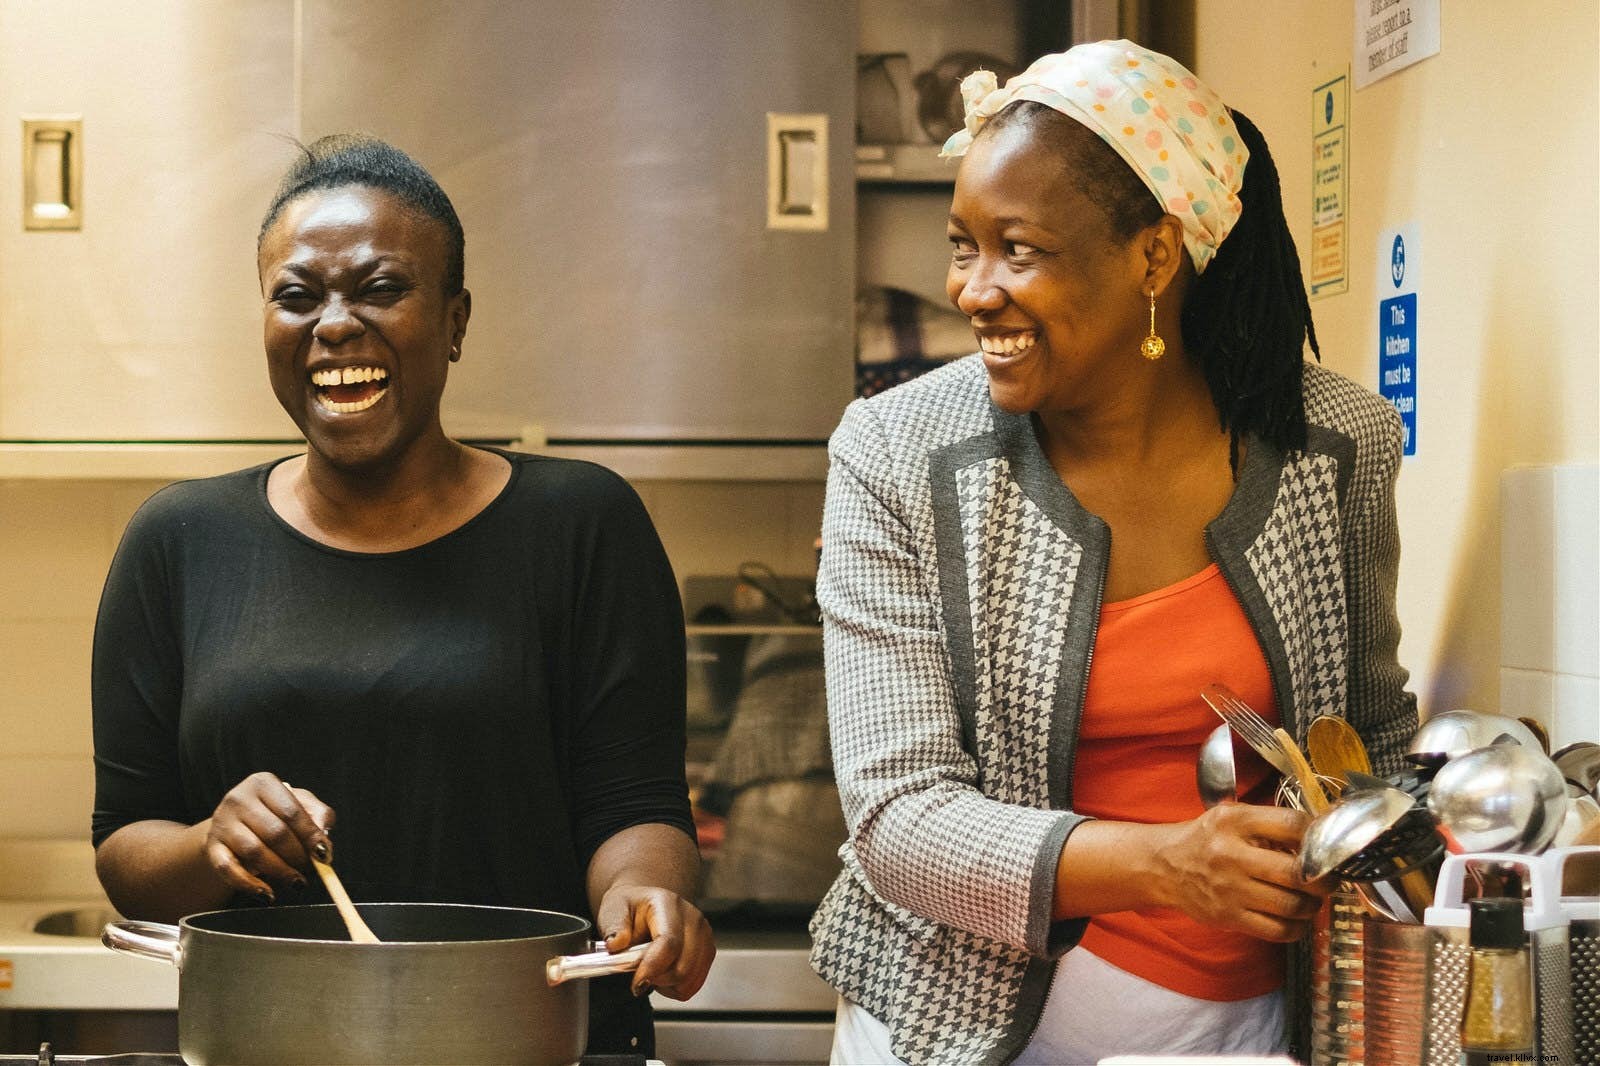 Makan dengan baik, berbuat baik:10 restoran meningkatkan kehidupan para pengungsi 